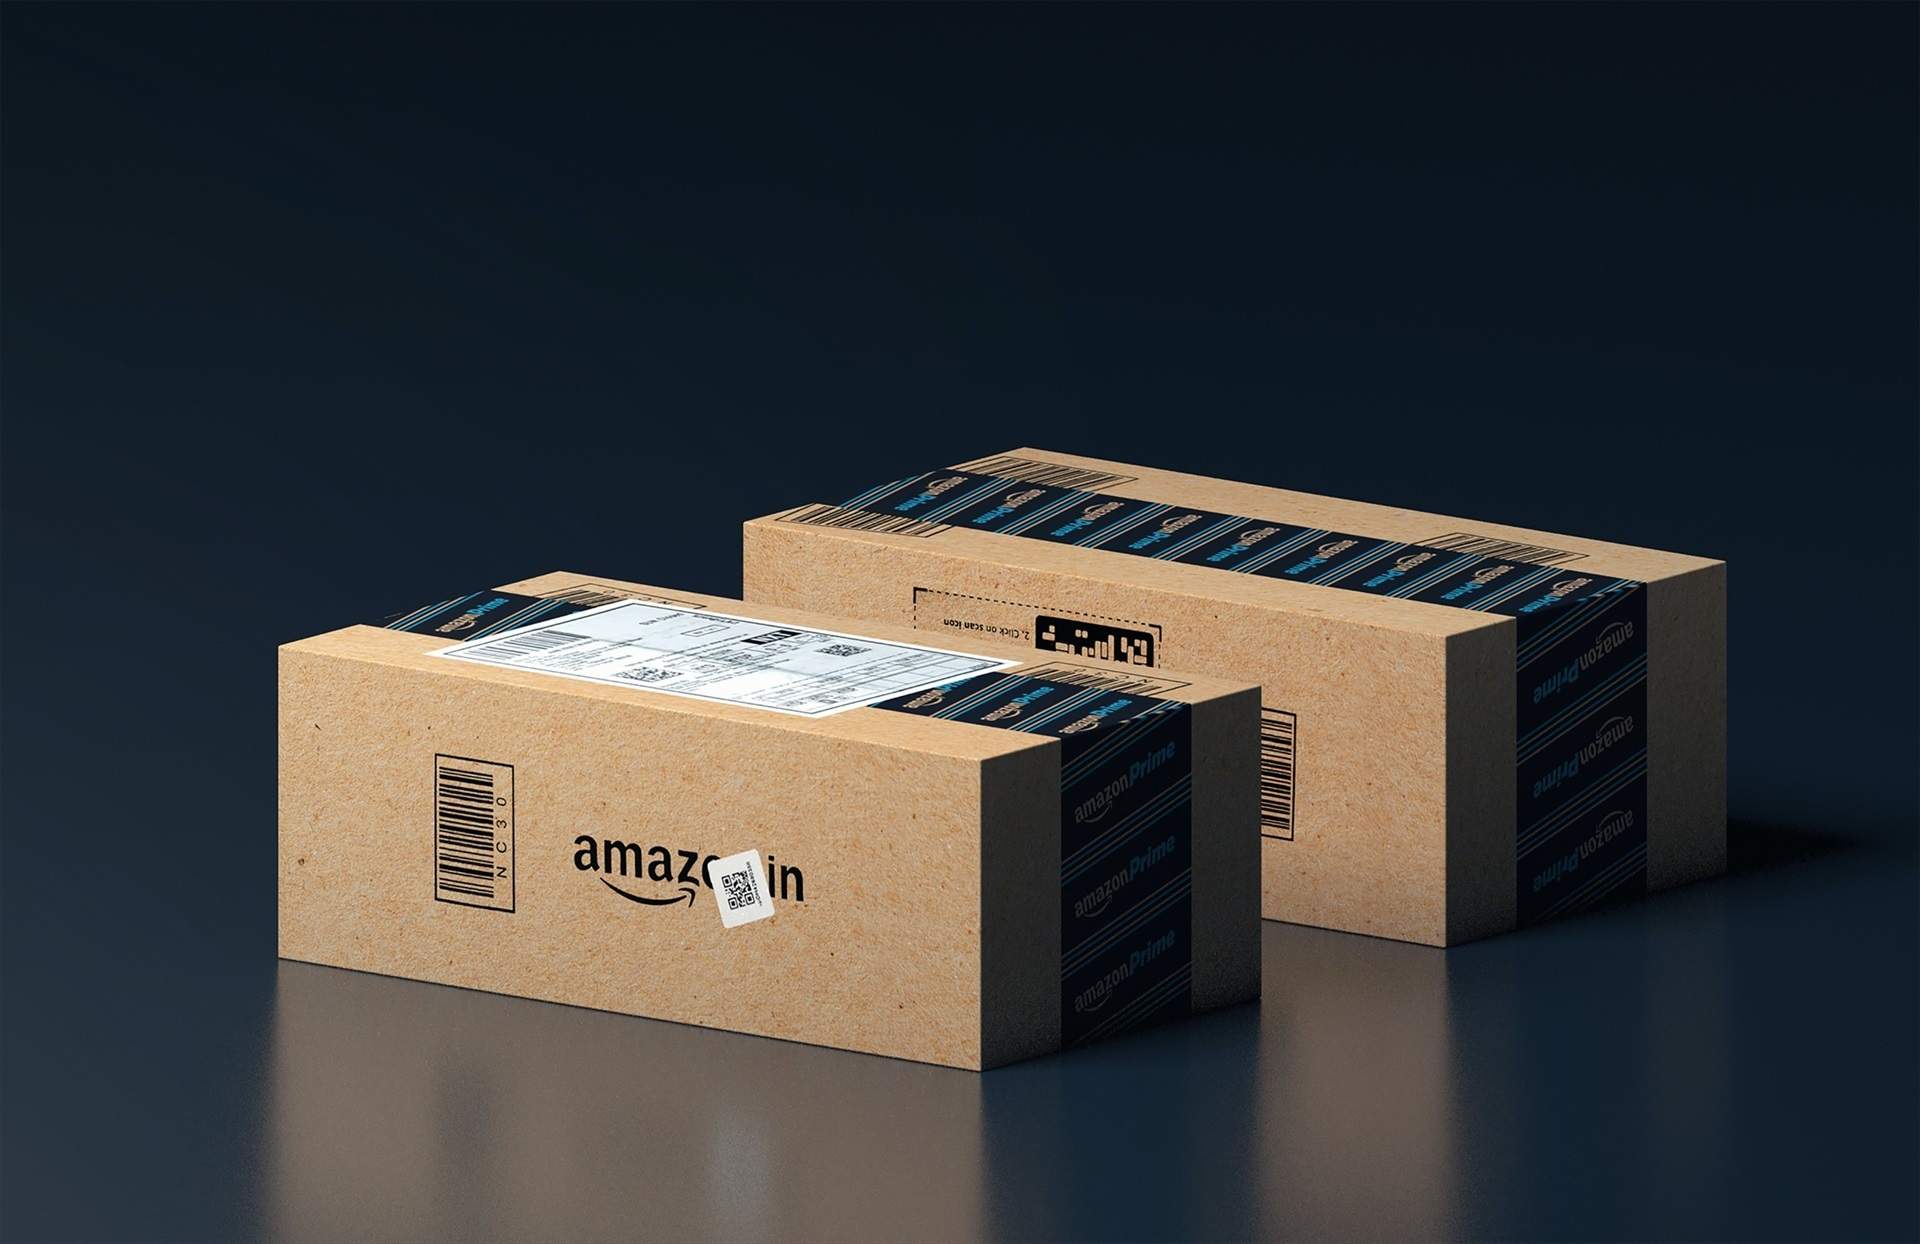 El Tribunal Suprem decidirà si Amazon és un operador postal, com considera Competència